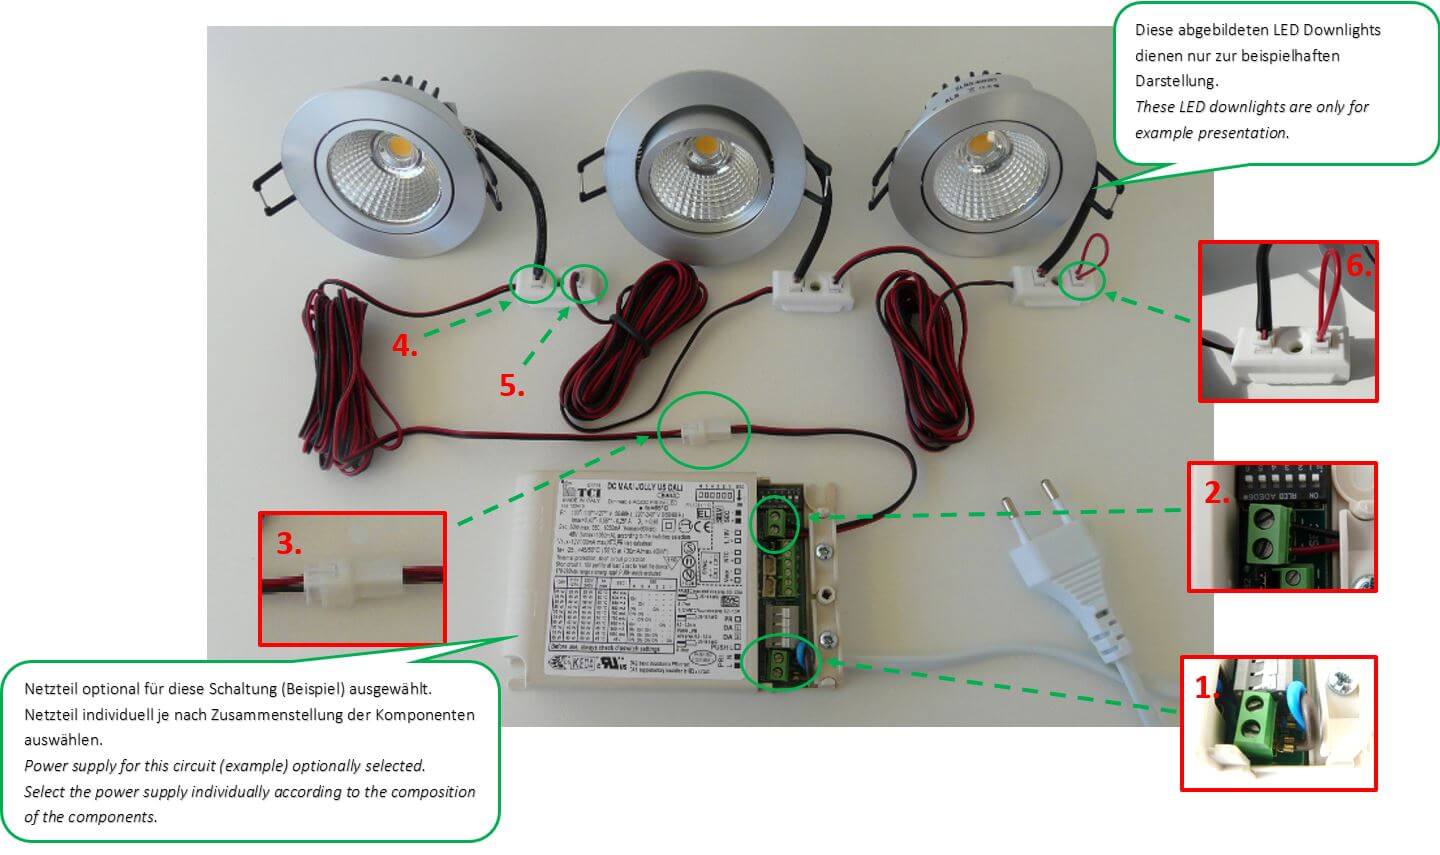 minus tunnel navigation Praxistipp: LED Reihenschaltung ganz einfach installieren